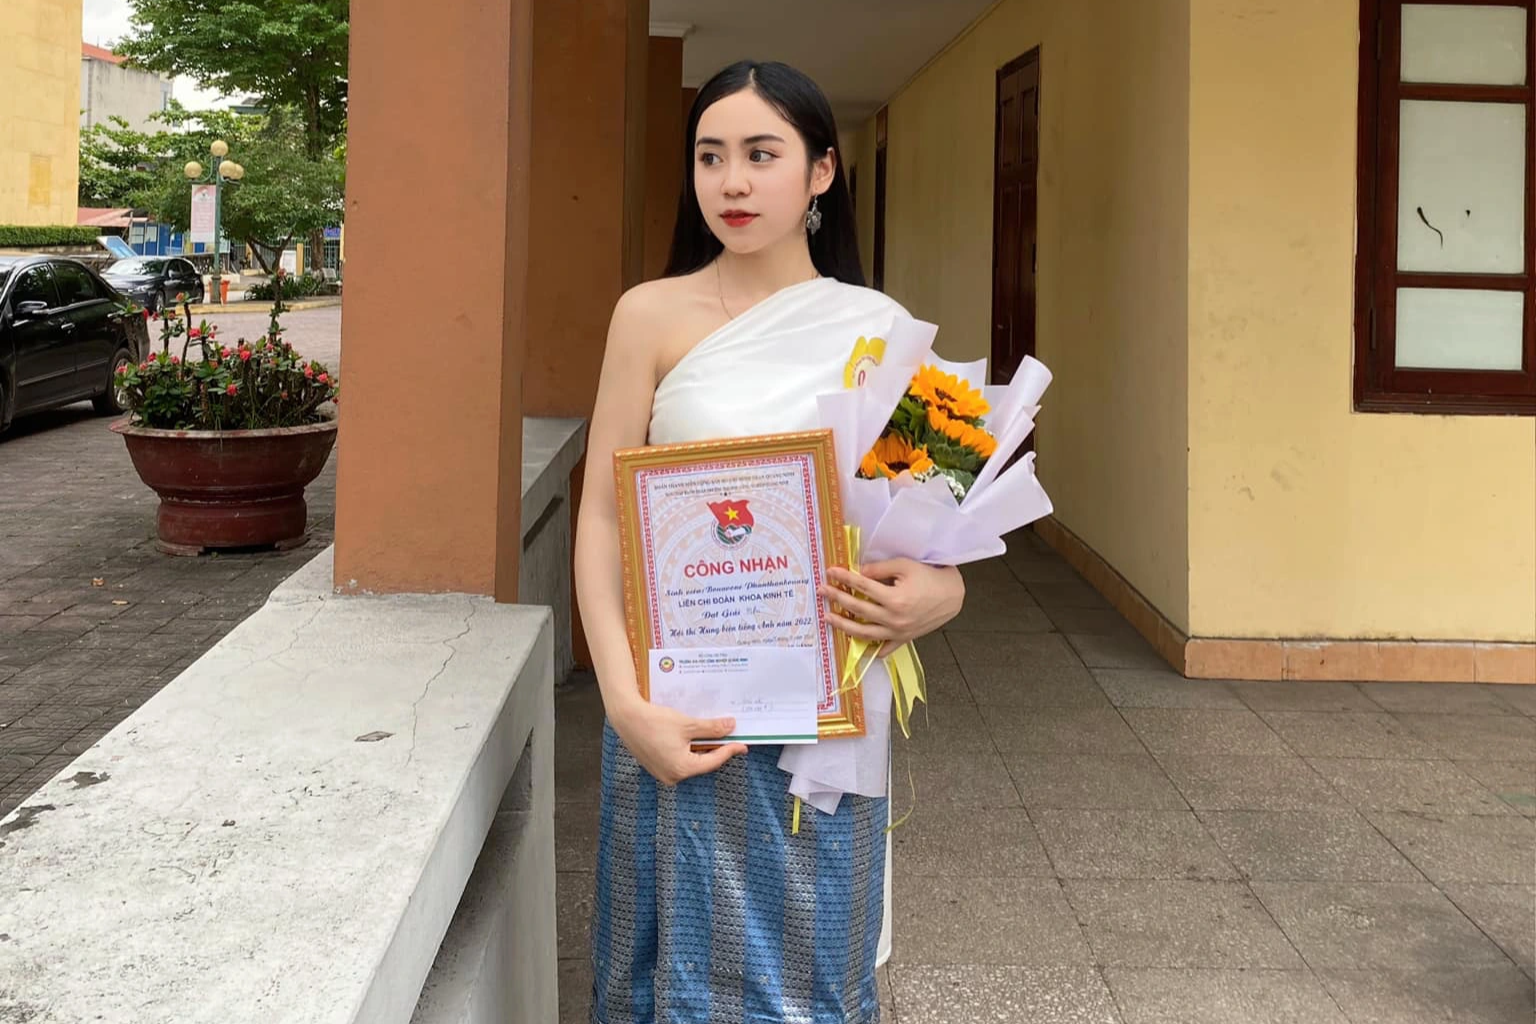 Nữ du học sinh Lào xinh đẹp, nổi tiếng nhờ yêu thích văn hóa Việt Nam - 5